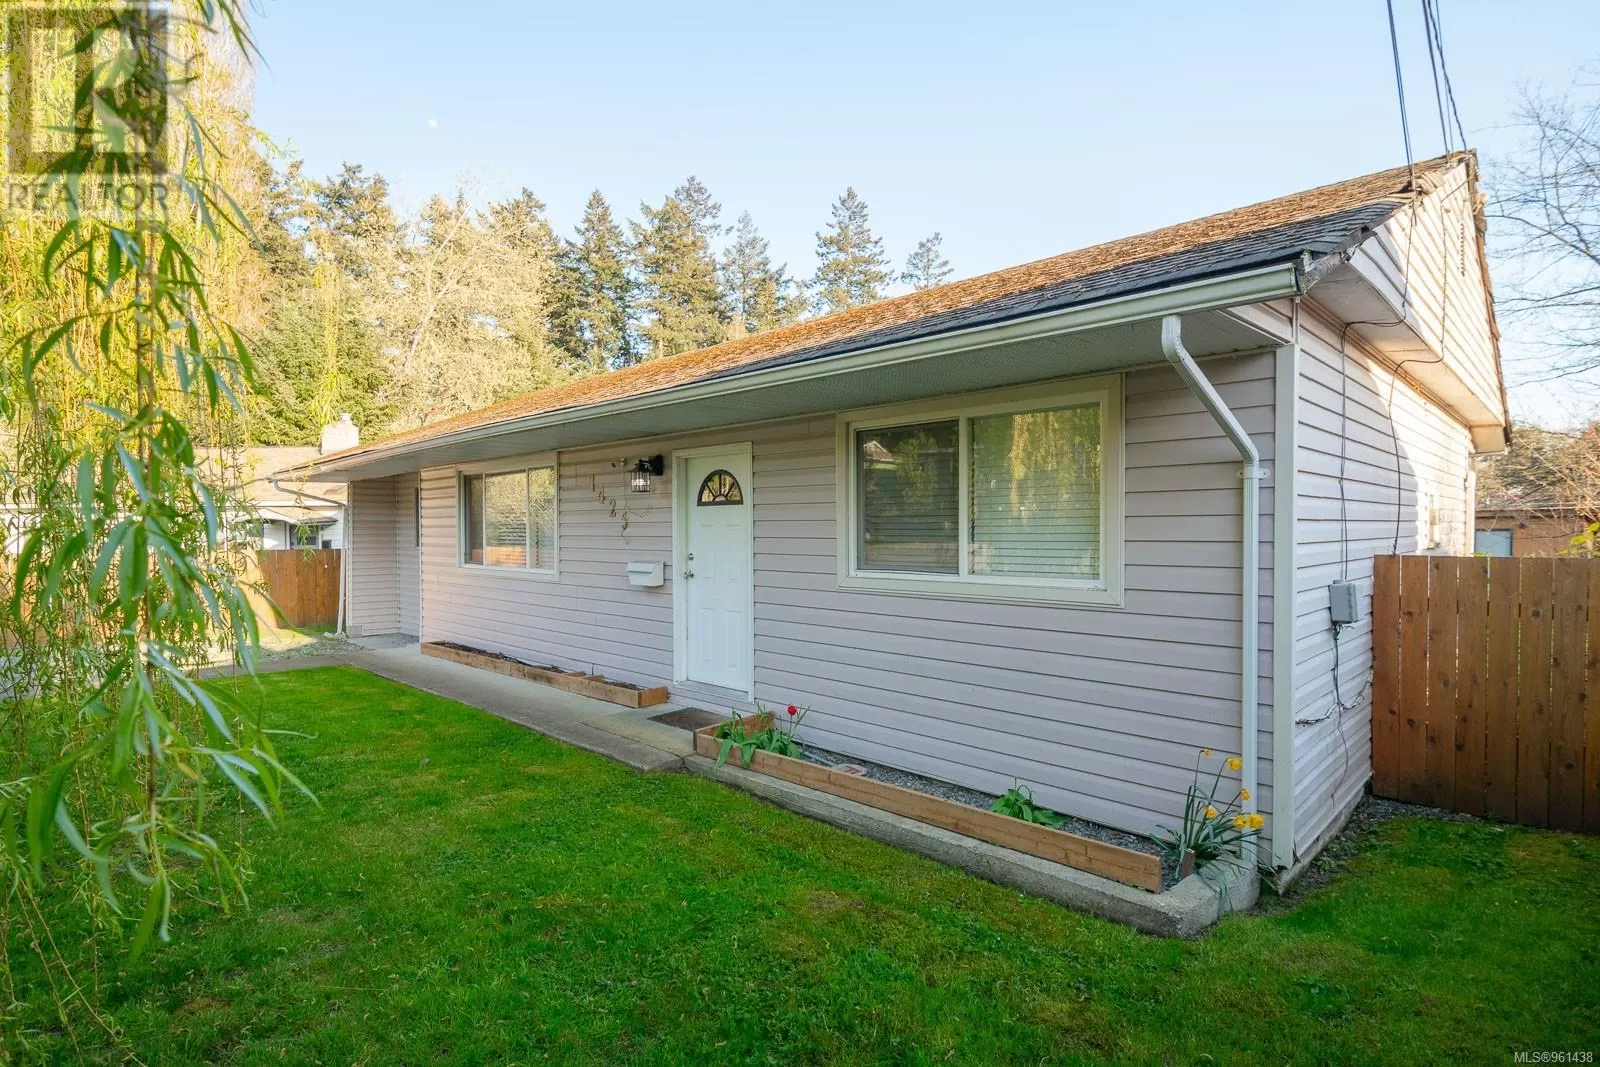 House for rent: 1425 White St, Nanaimo, British Columbia V9S 1J1